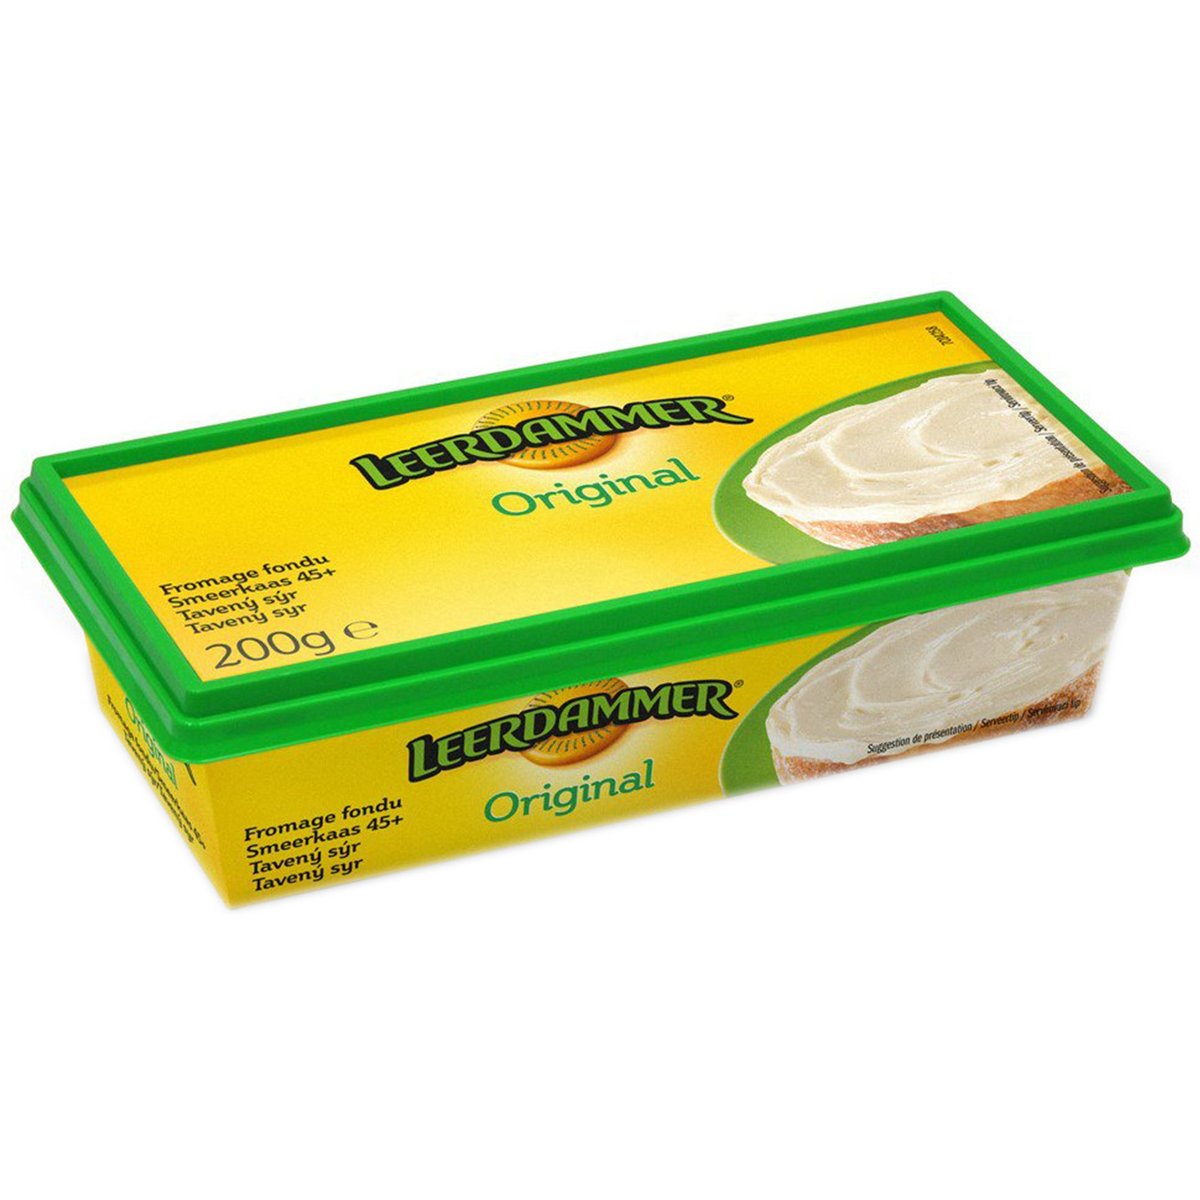 Leerdammer Original tavený sýr